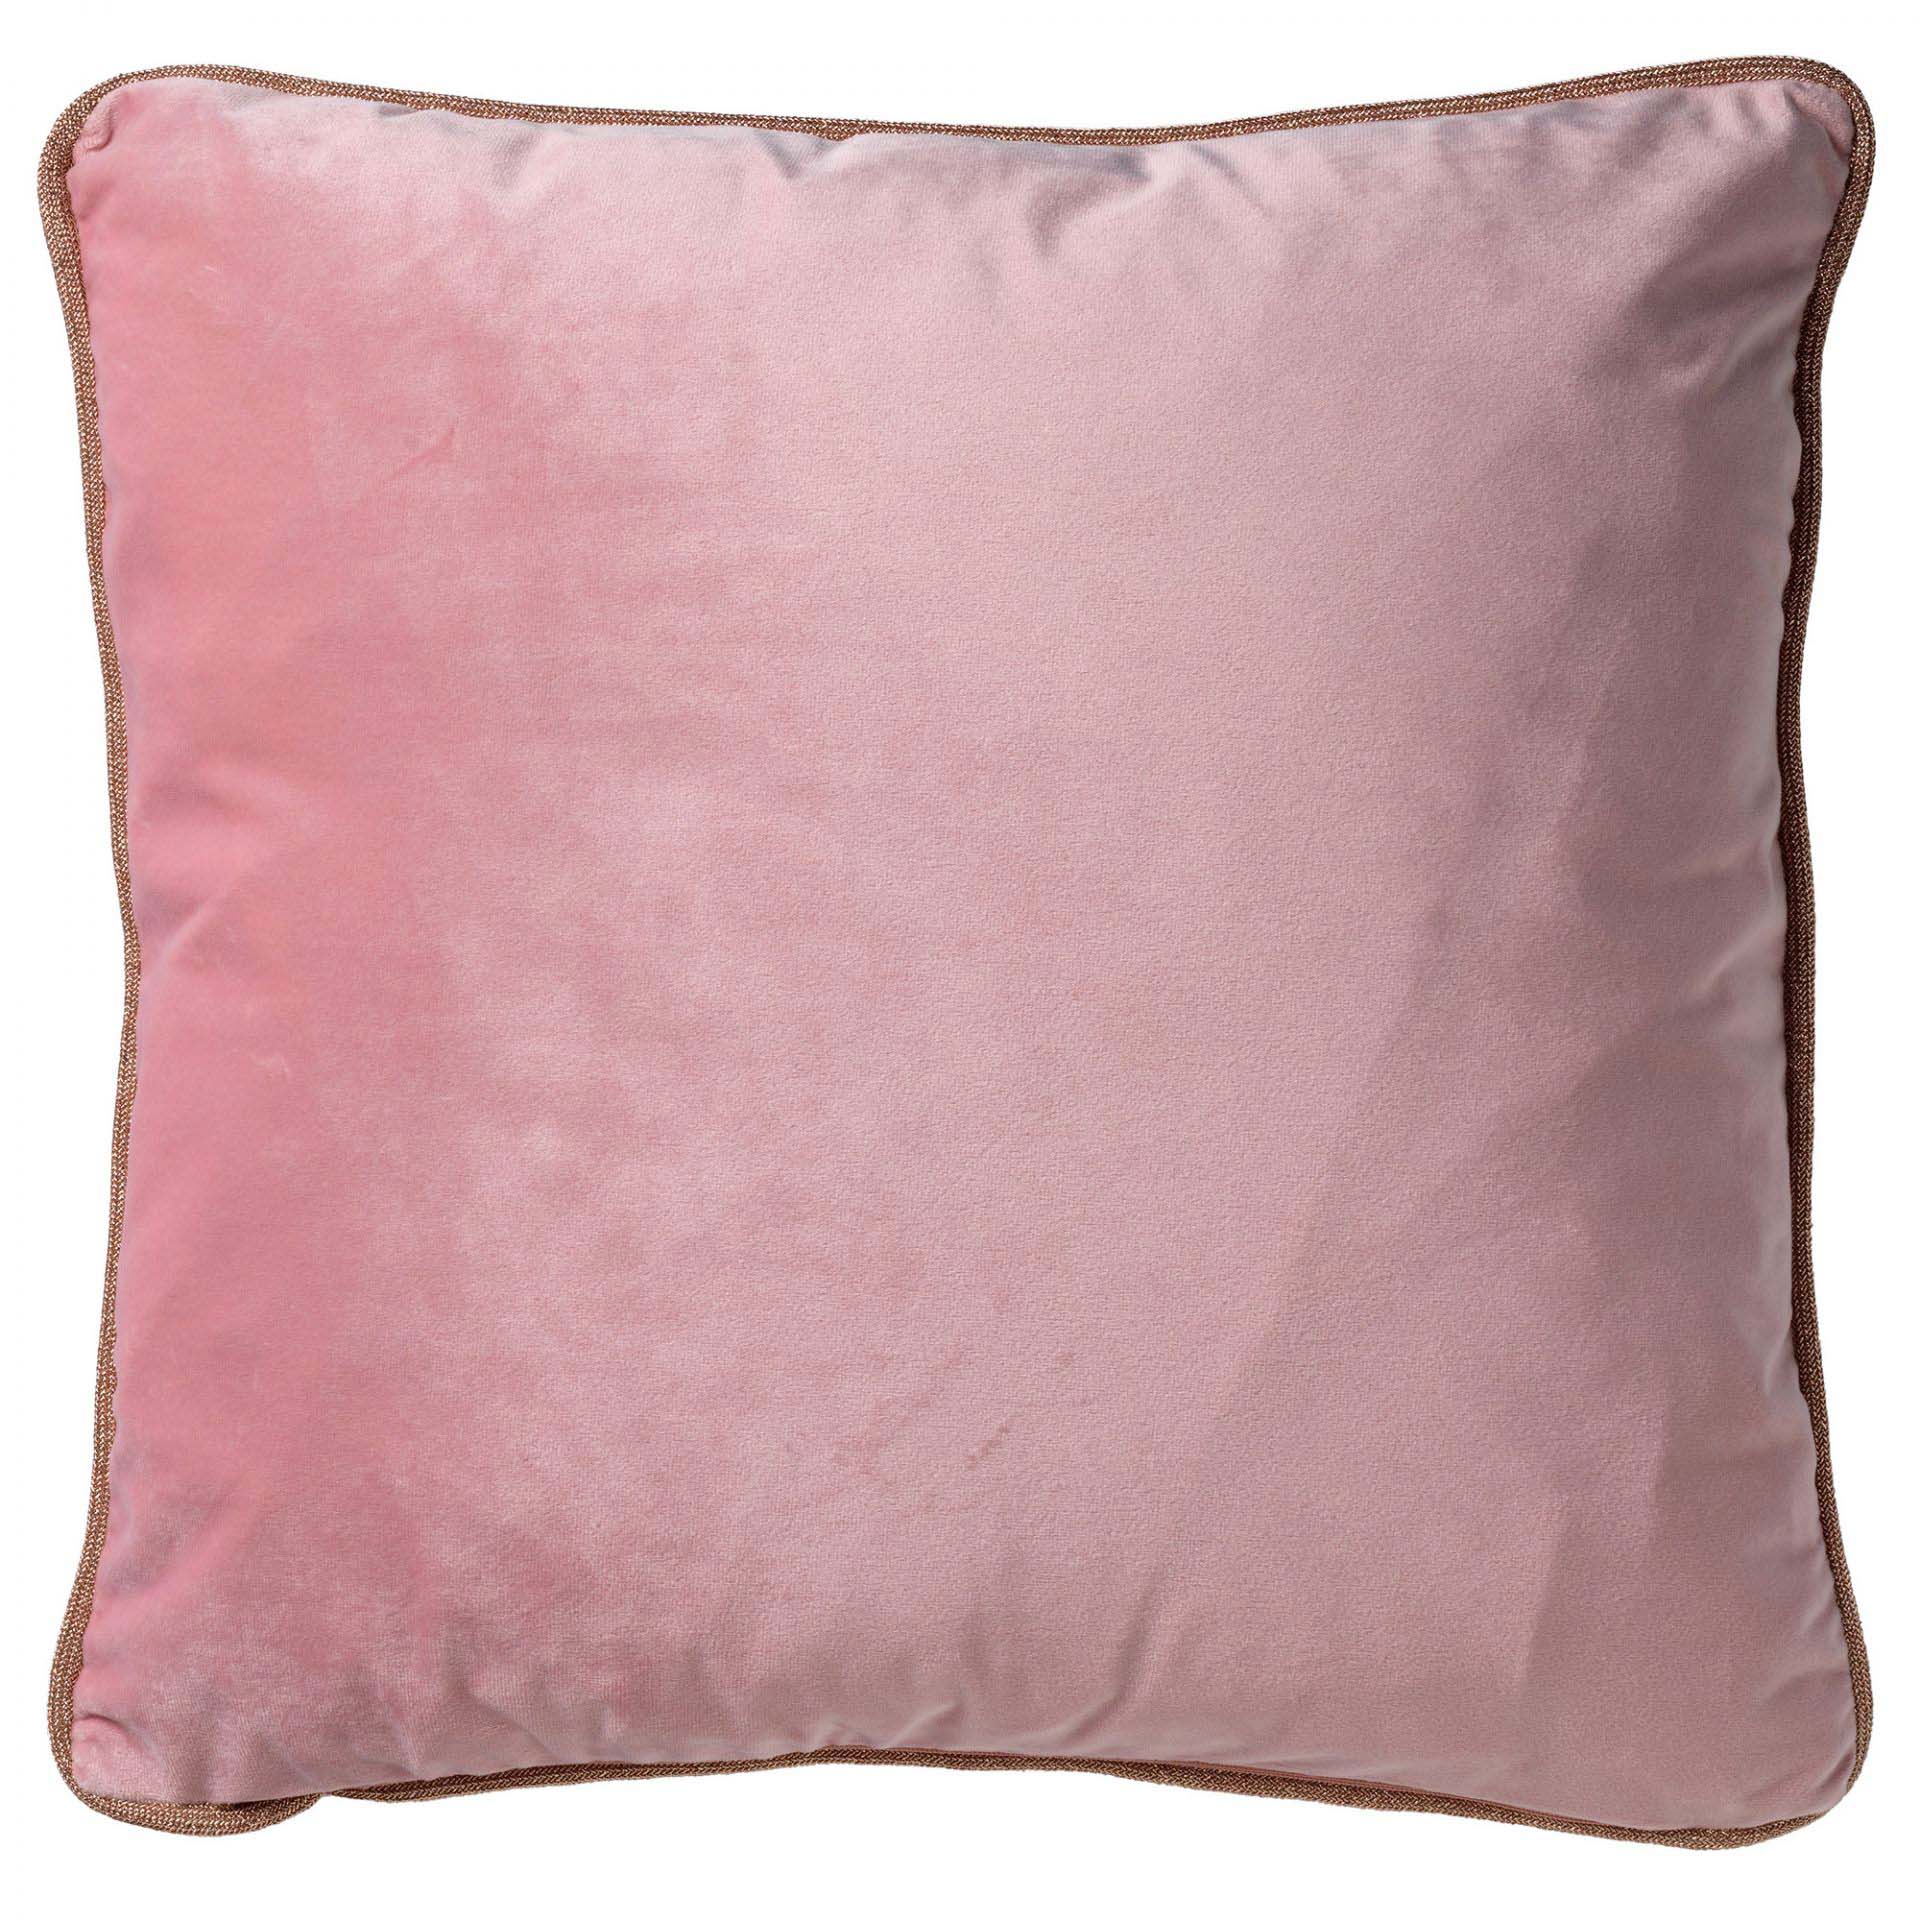 FINN - Sierkussen velvet Coral Blush glitter bies 45x45 cm - roze